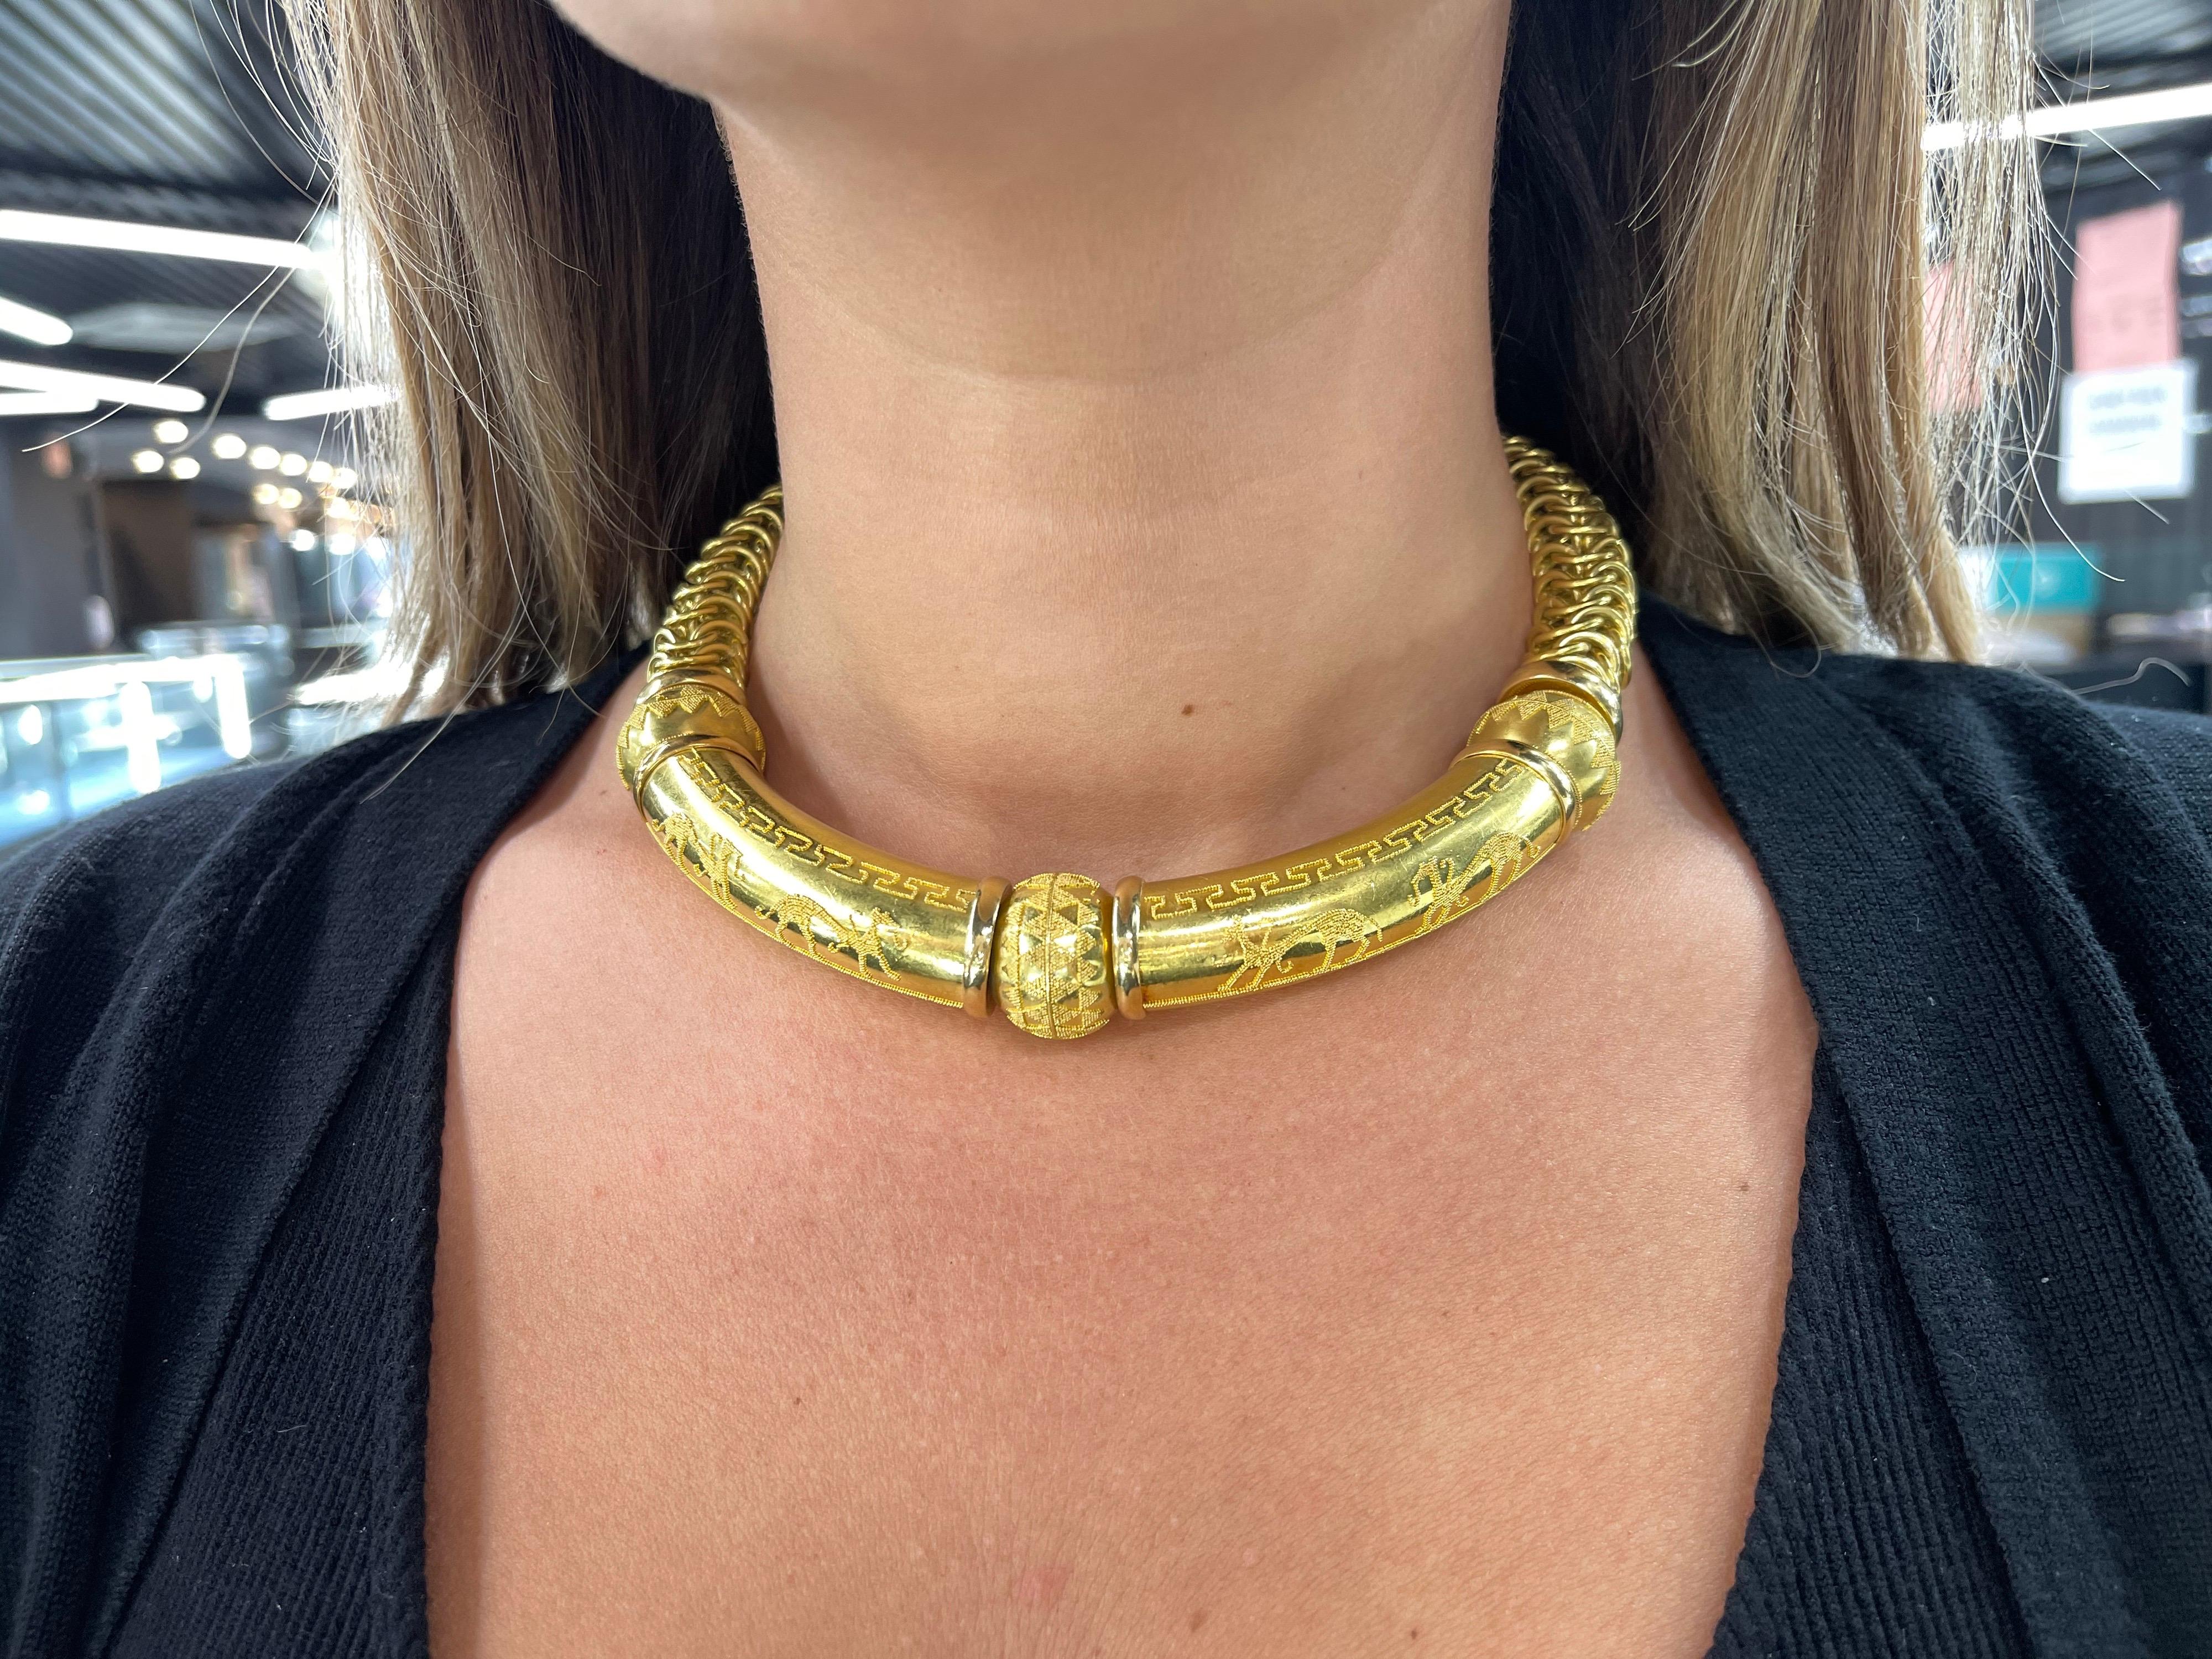 Sehr coole UnoAErre-Halskette mit ägyptischem Perlenmotiv auf der Vorderseite an einer breiten Gliederkette mit einem Gewicht von 146,2 Gramm.
Sitzt gut im Nacken.
Ein tolles Gesprächsthema! 